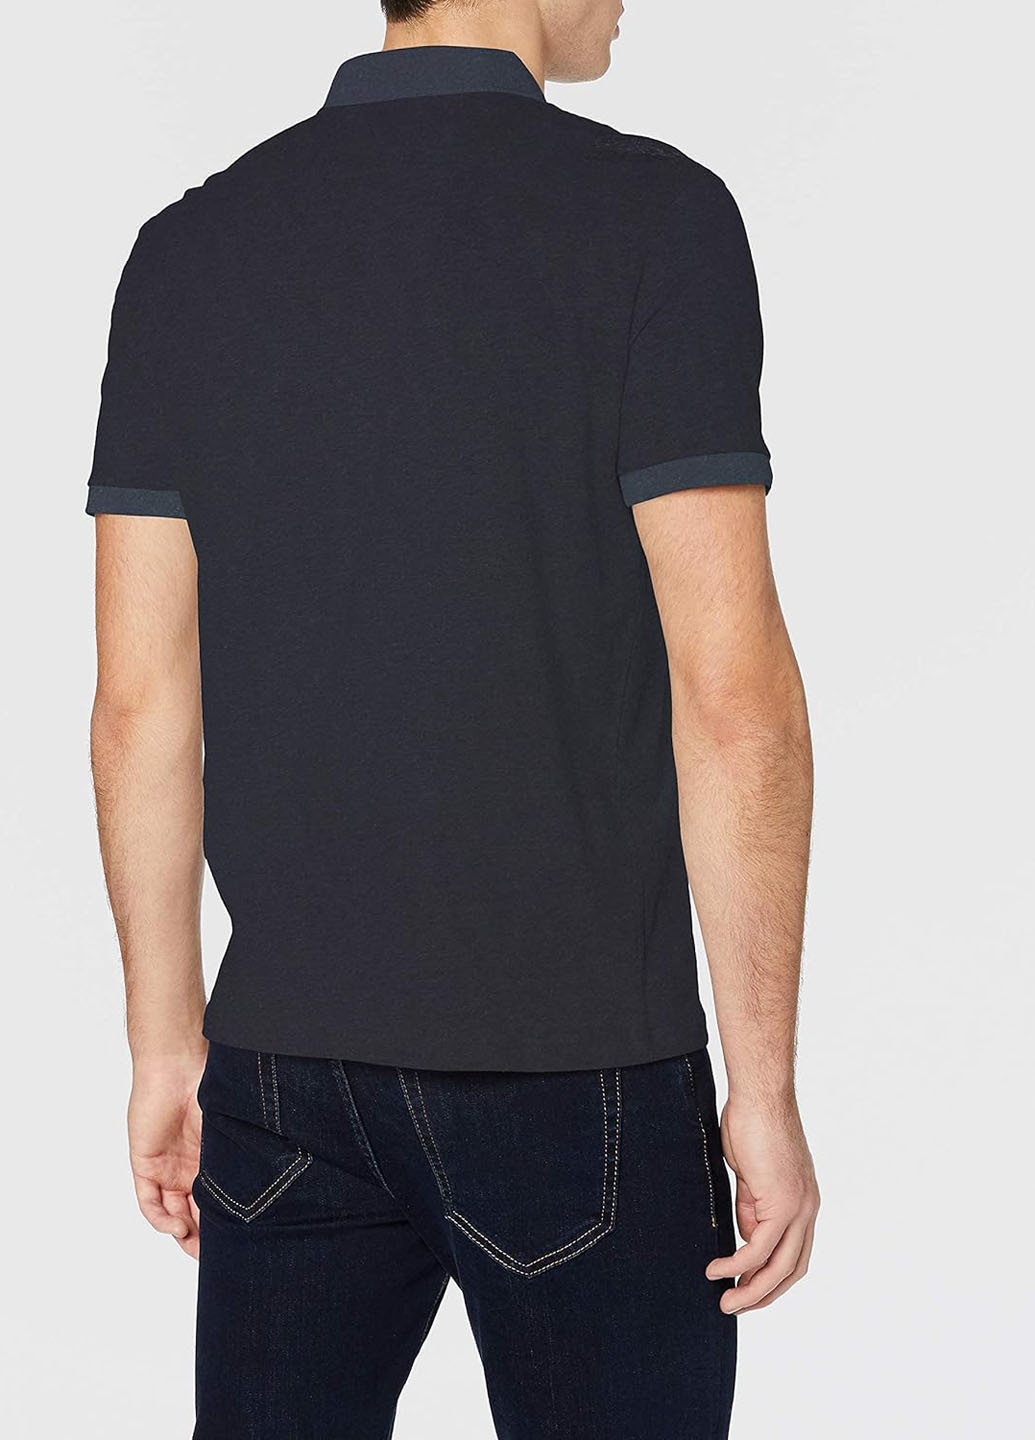 Индиго футболка-поло для мужчин Armani Exchange с надписью